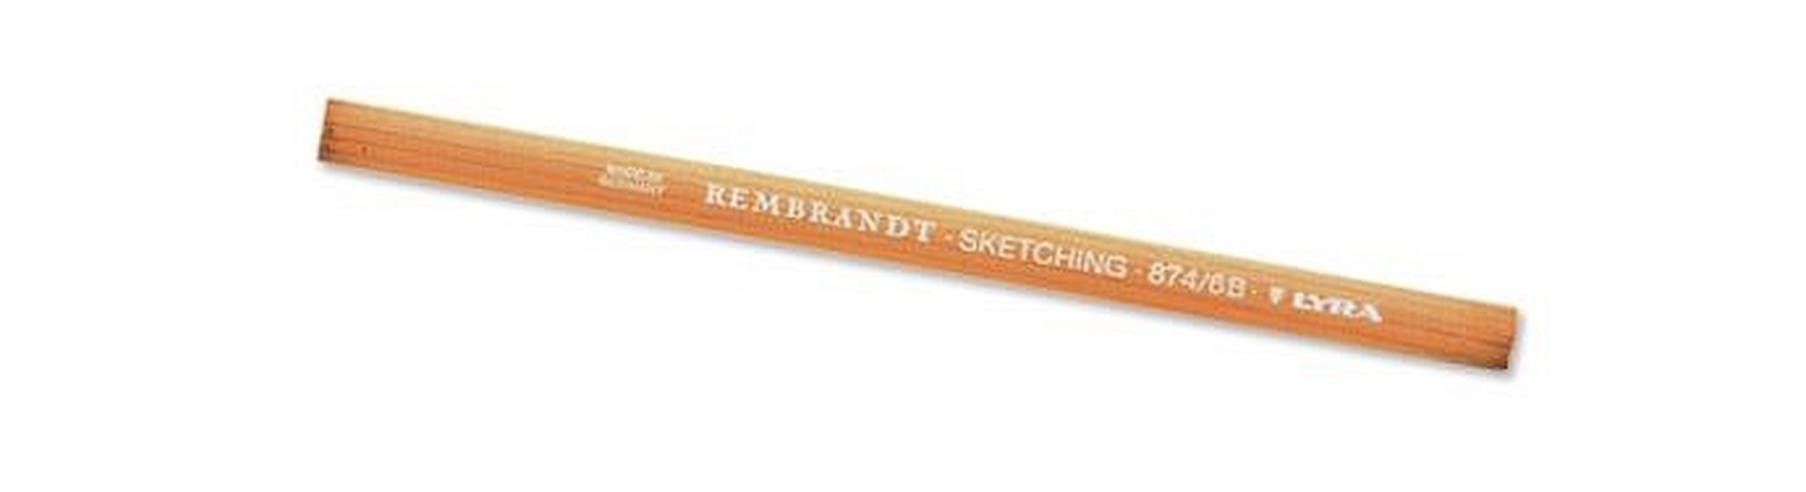 LYRA REMBRANDT карандаш художественный для скетчей 4B